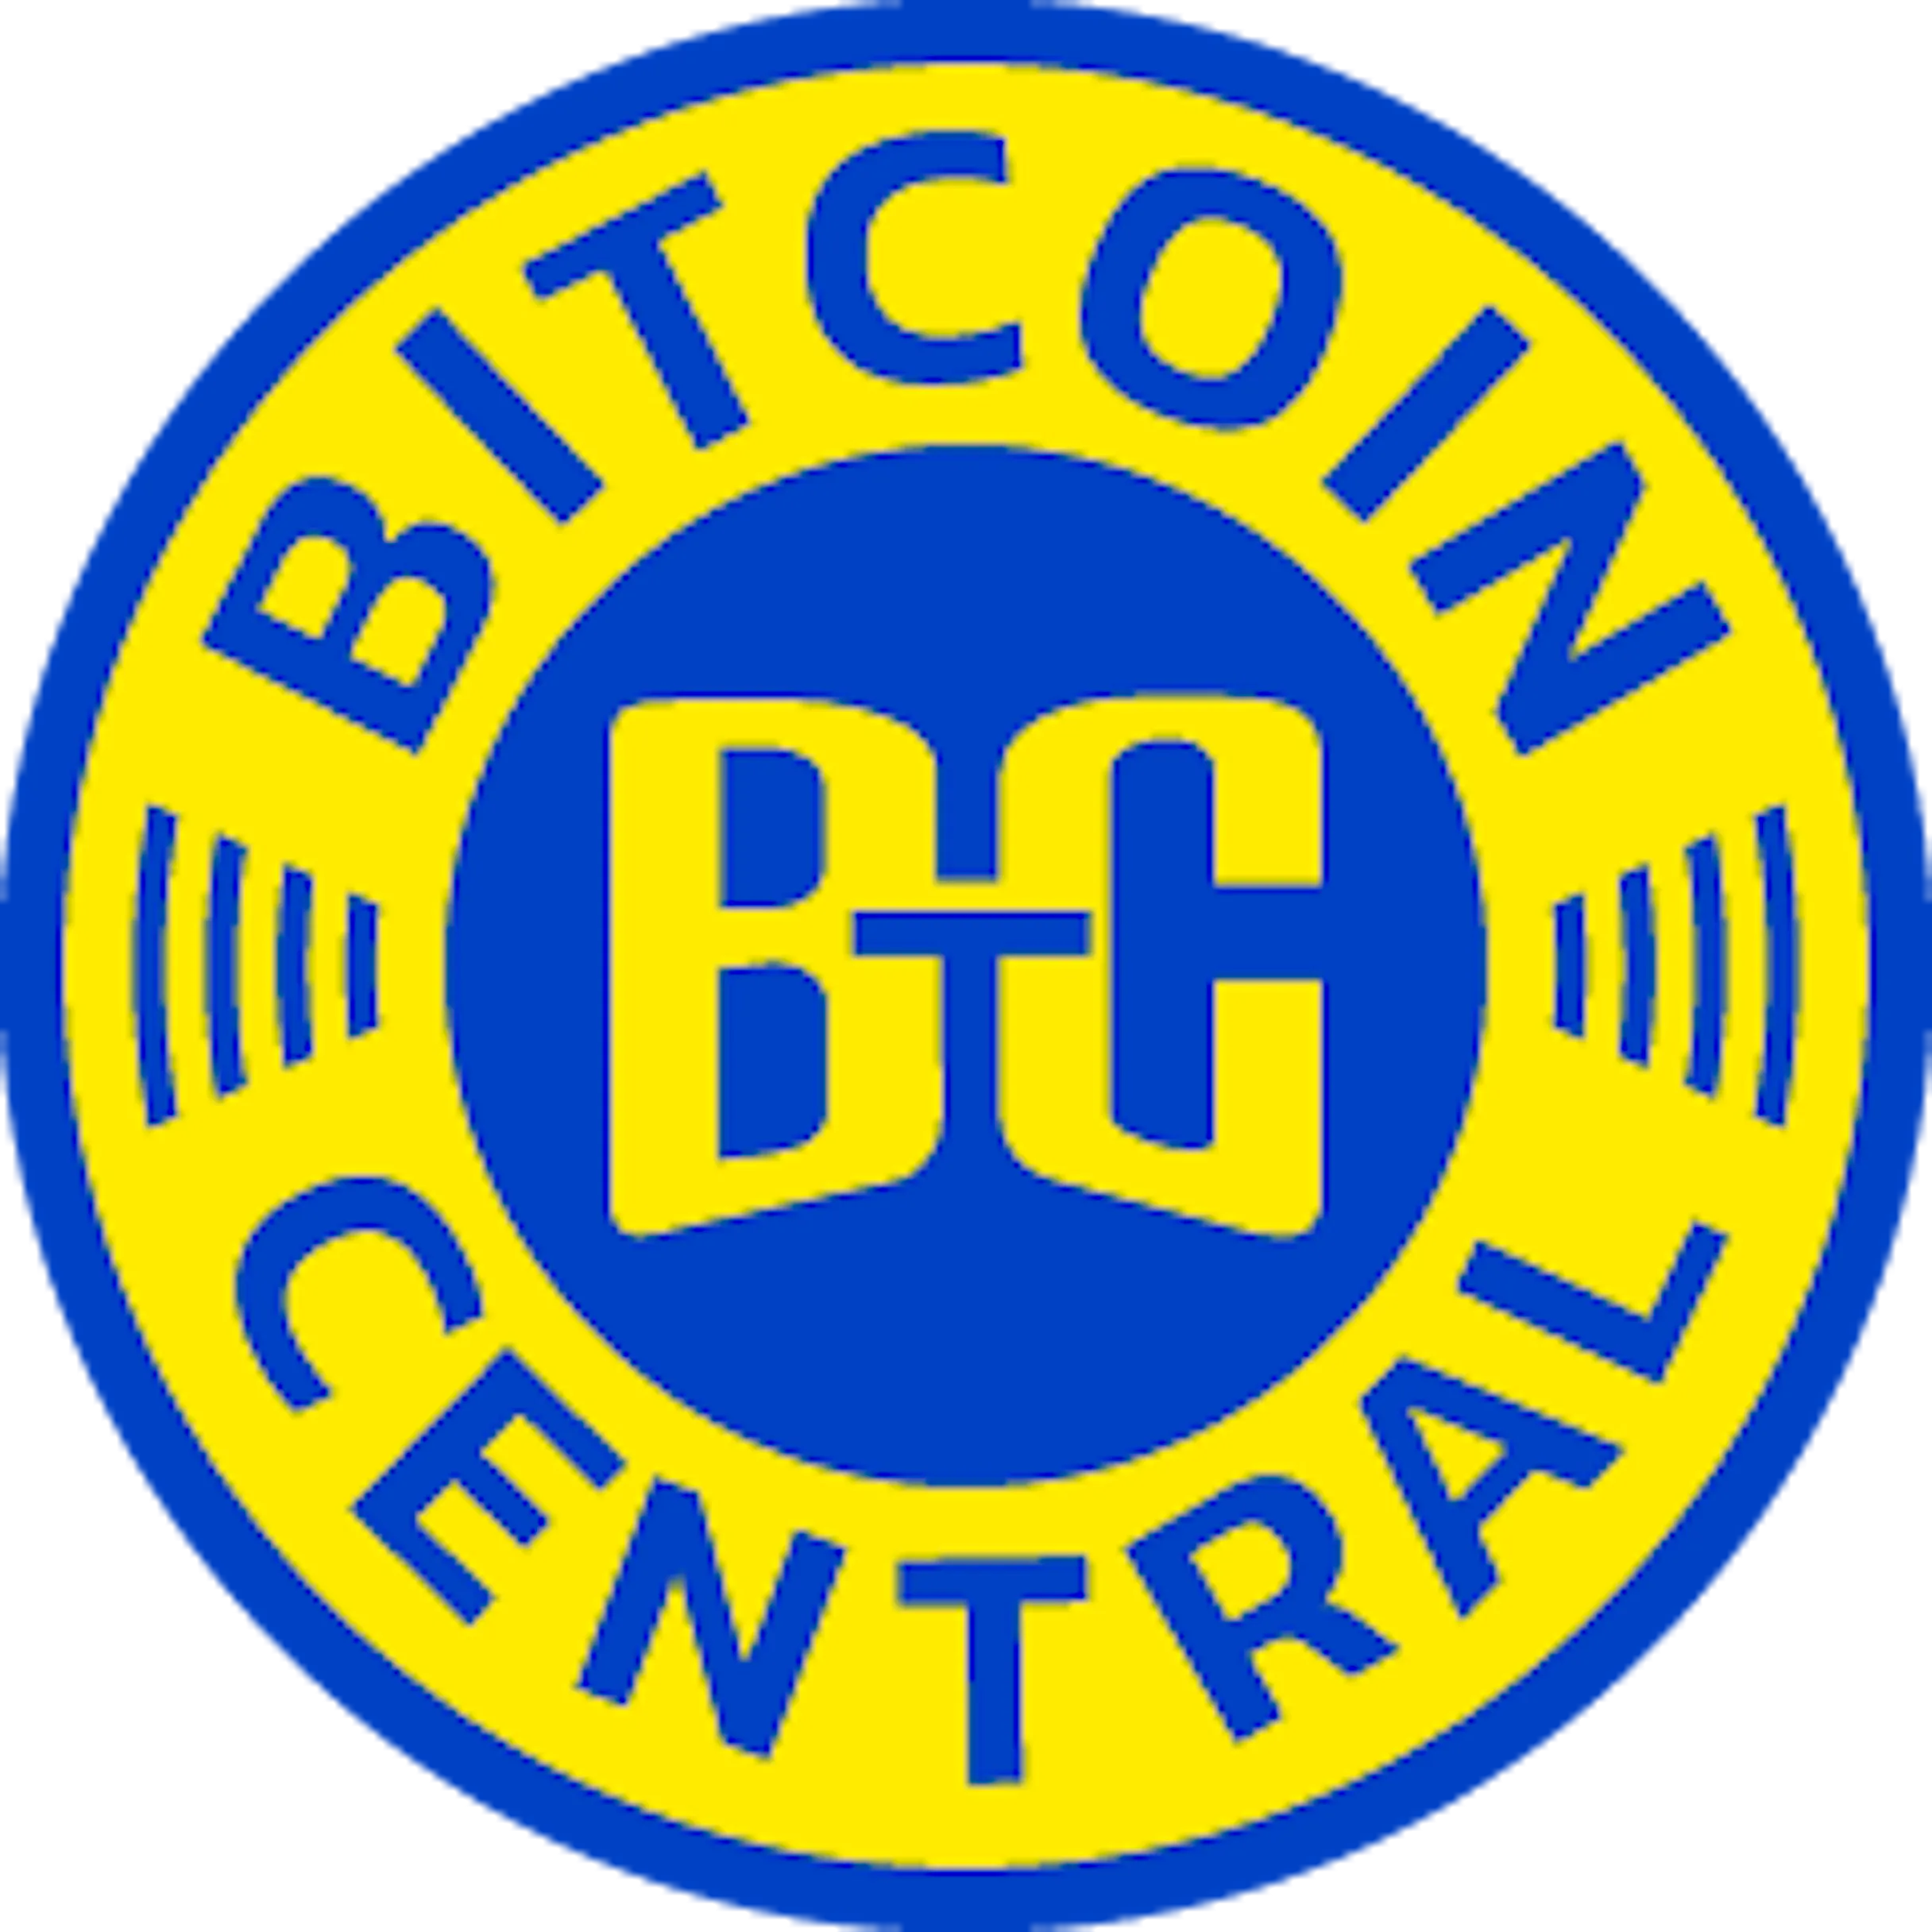 bitcoin central logo